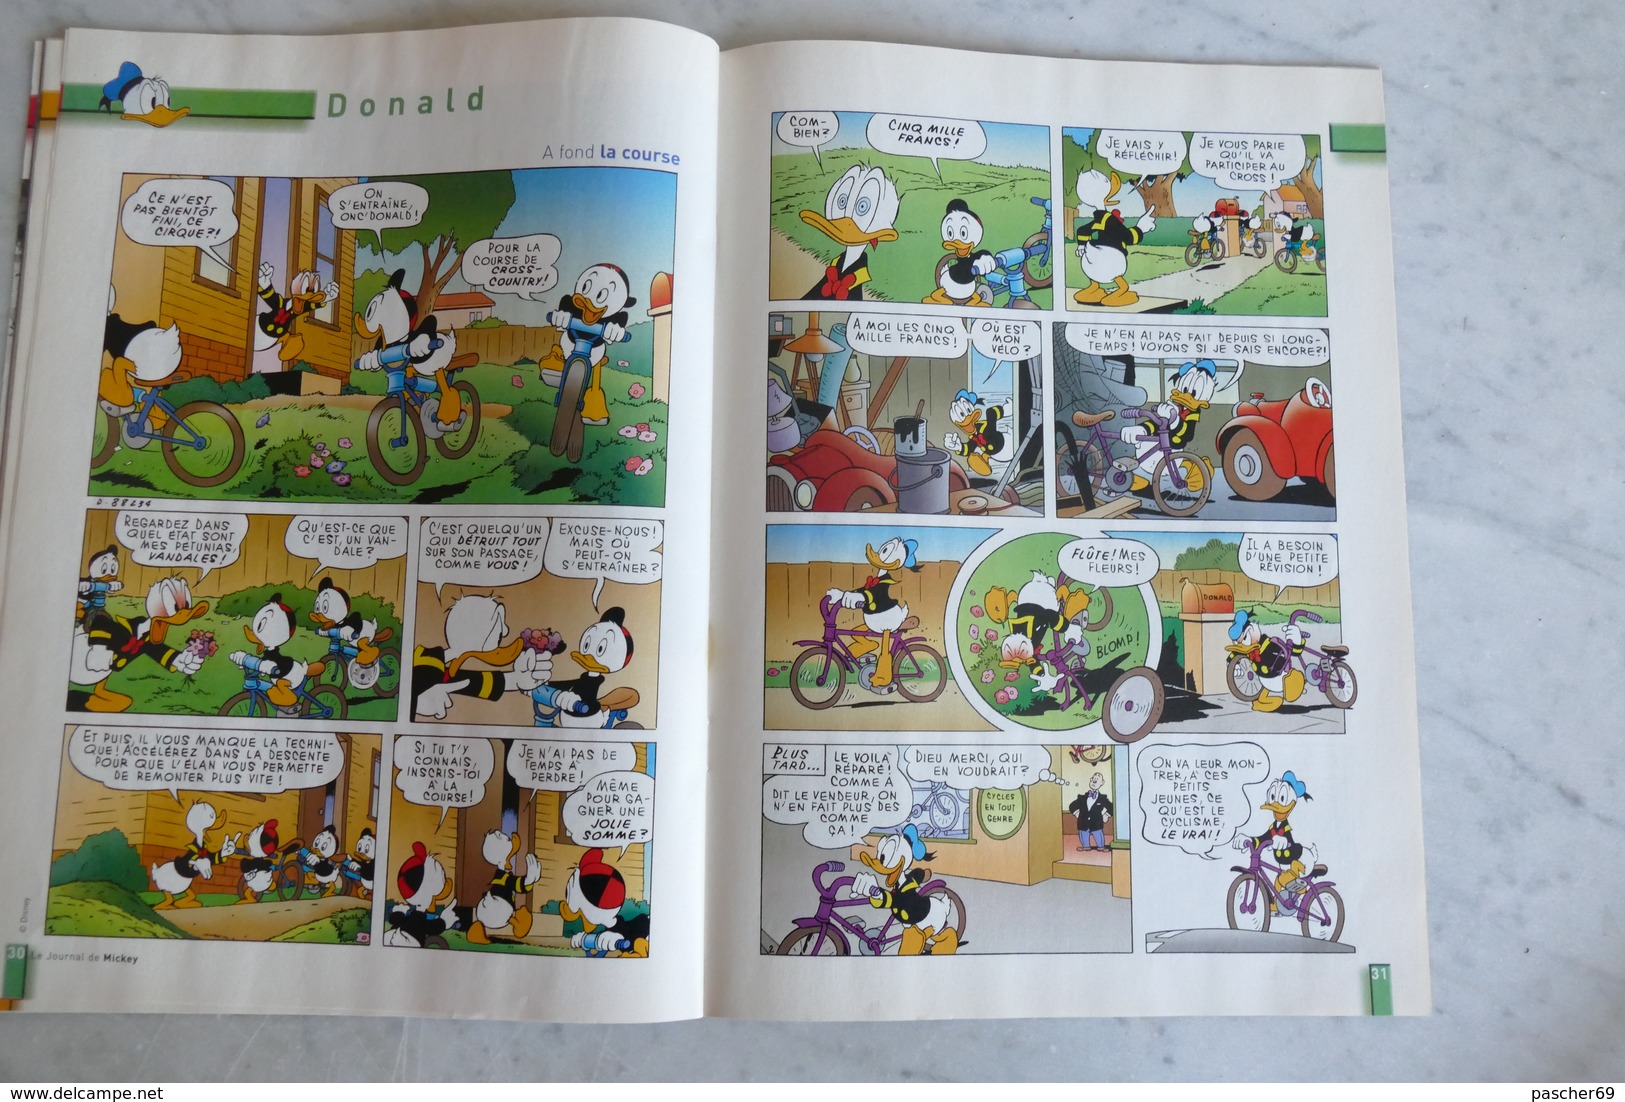 Le journal de Mickey ** Edition spéciale Tour de France ** 2003   / K 39